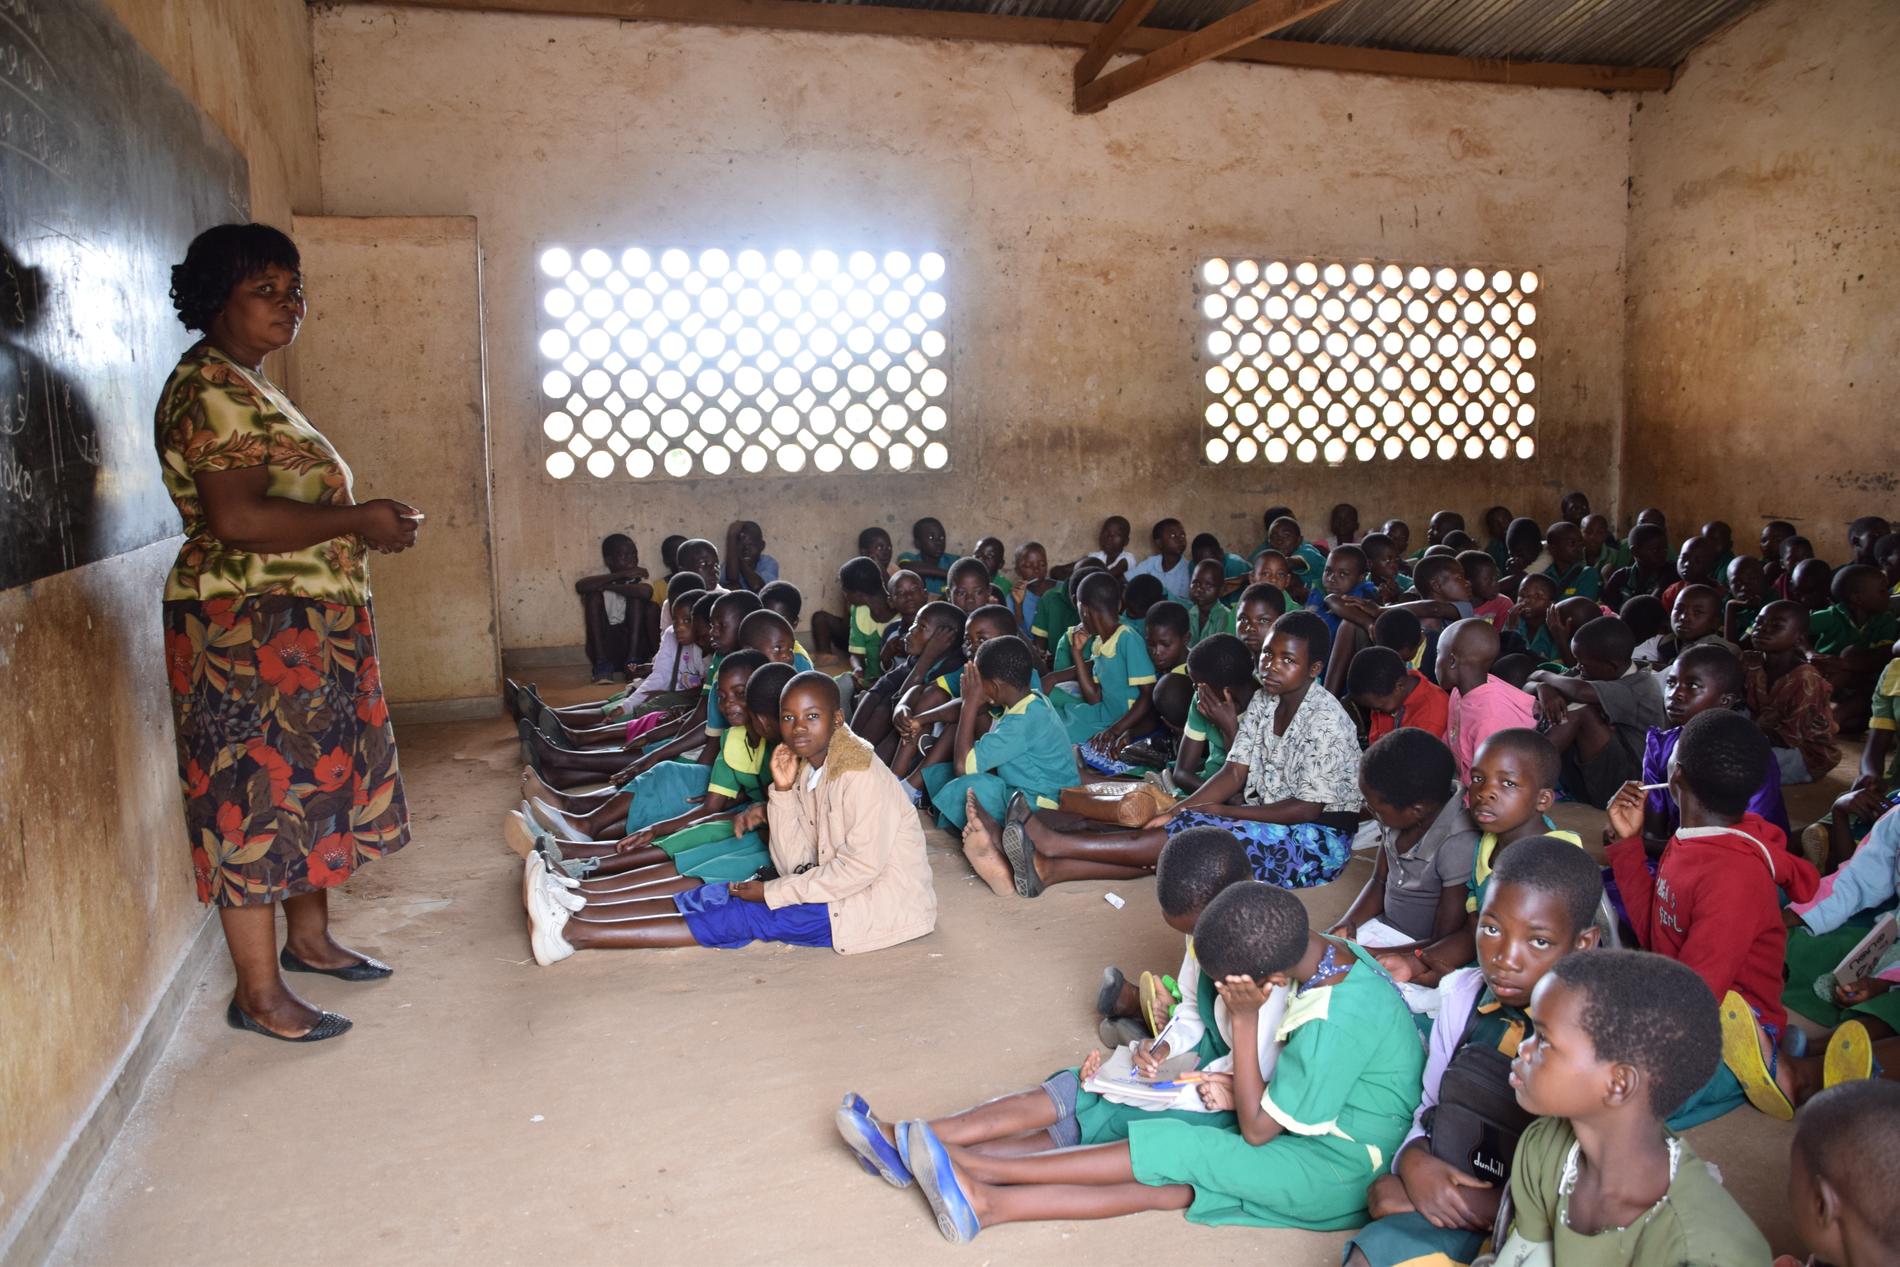 – Utbildning för flickor ger dem en röst och chans att bestämma över sina liv, säger Constance som arbetar för Plan International i Malawi.